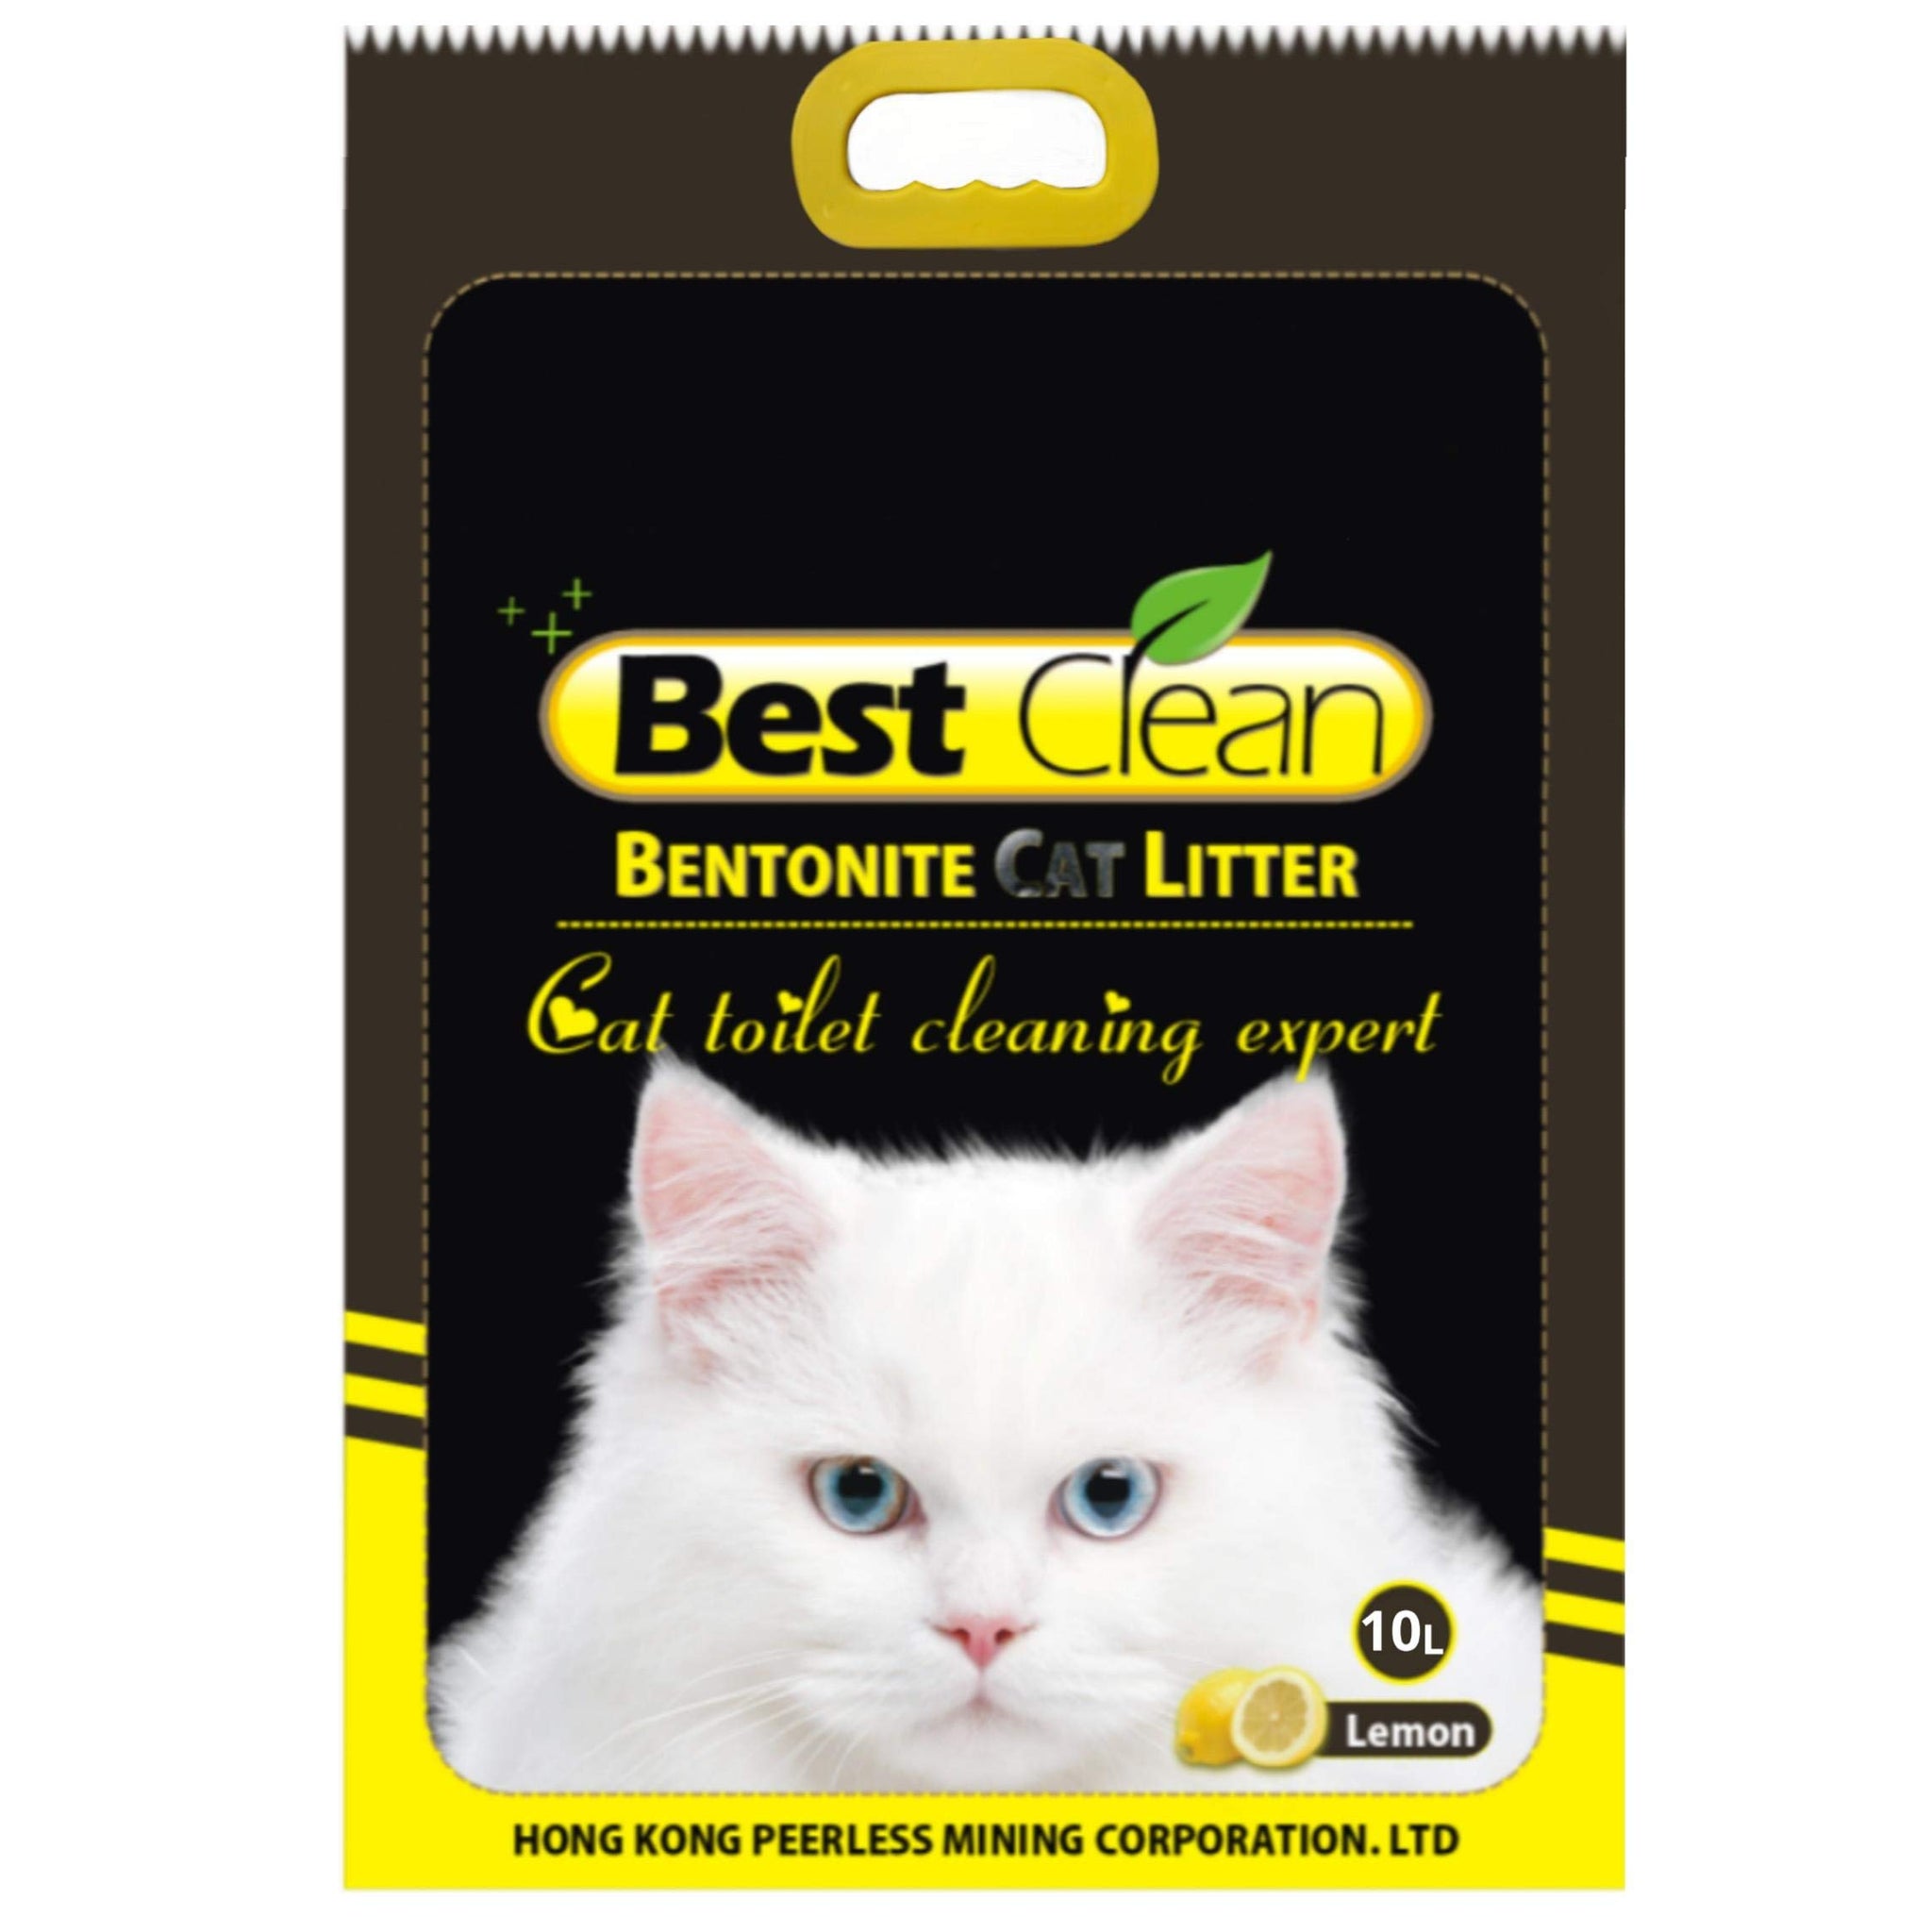 Best clean cat litter (3 scents)